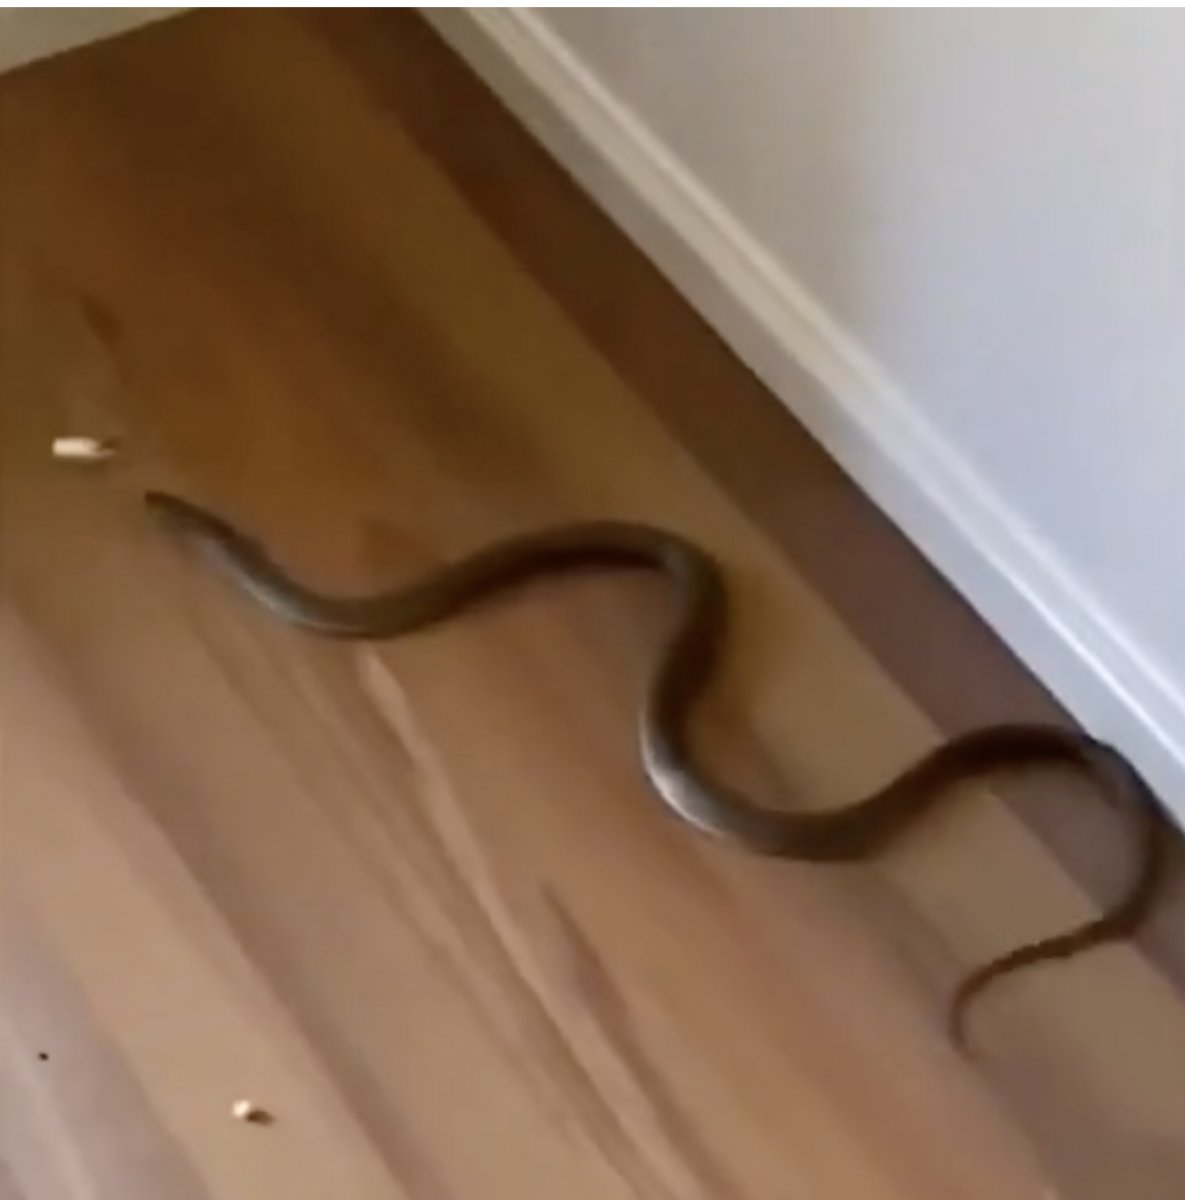 Avusturalyalı çocuk, evinde dünyanın en zehirli ikinci yılanını buldu #1